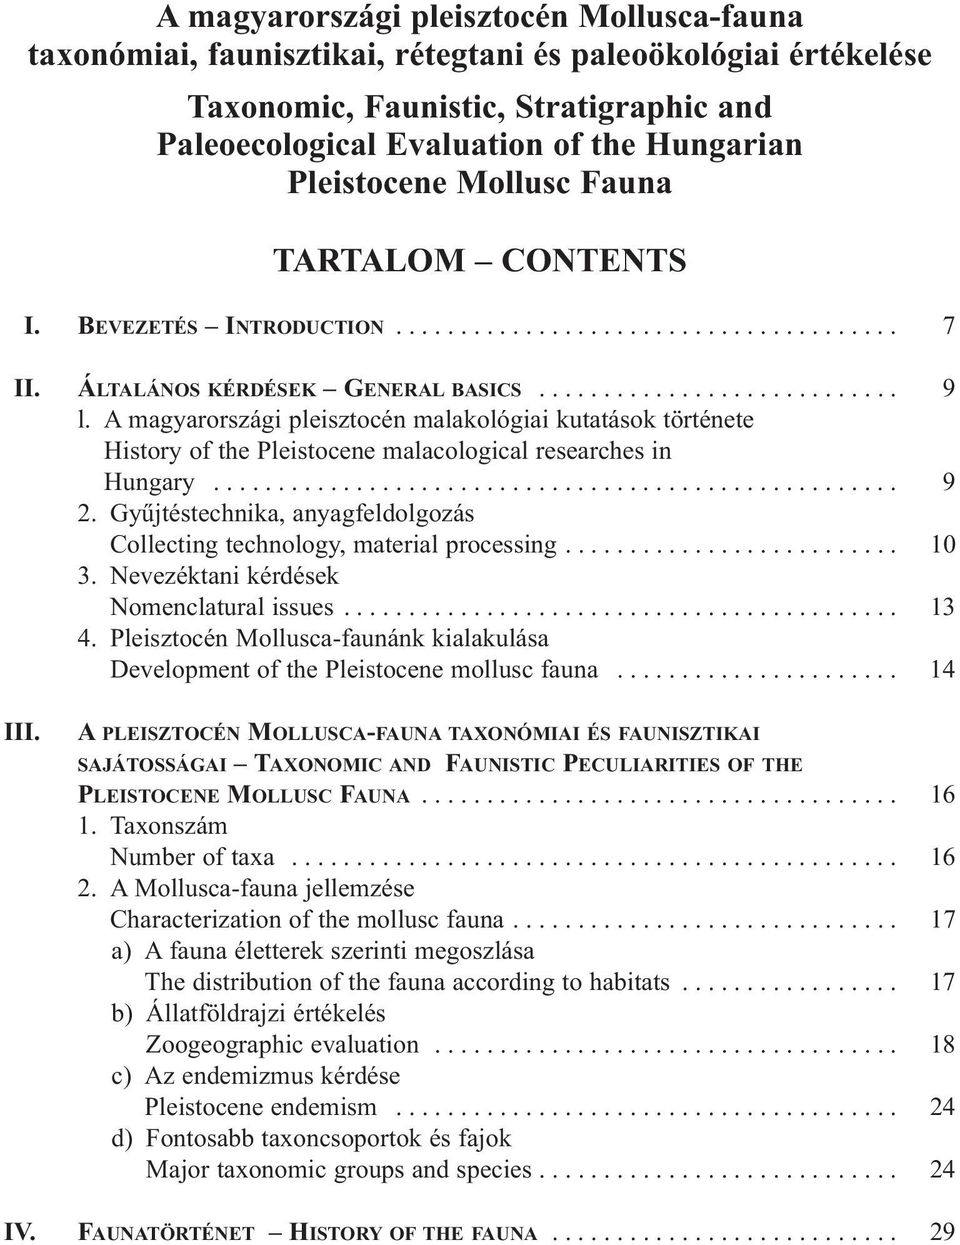 A magyarországi pleisztocén malakológiai kutatások története History of the Pleistocene malacological researches in Hungary..................................................... 9 2.